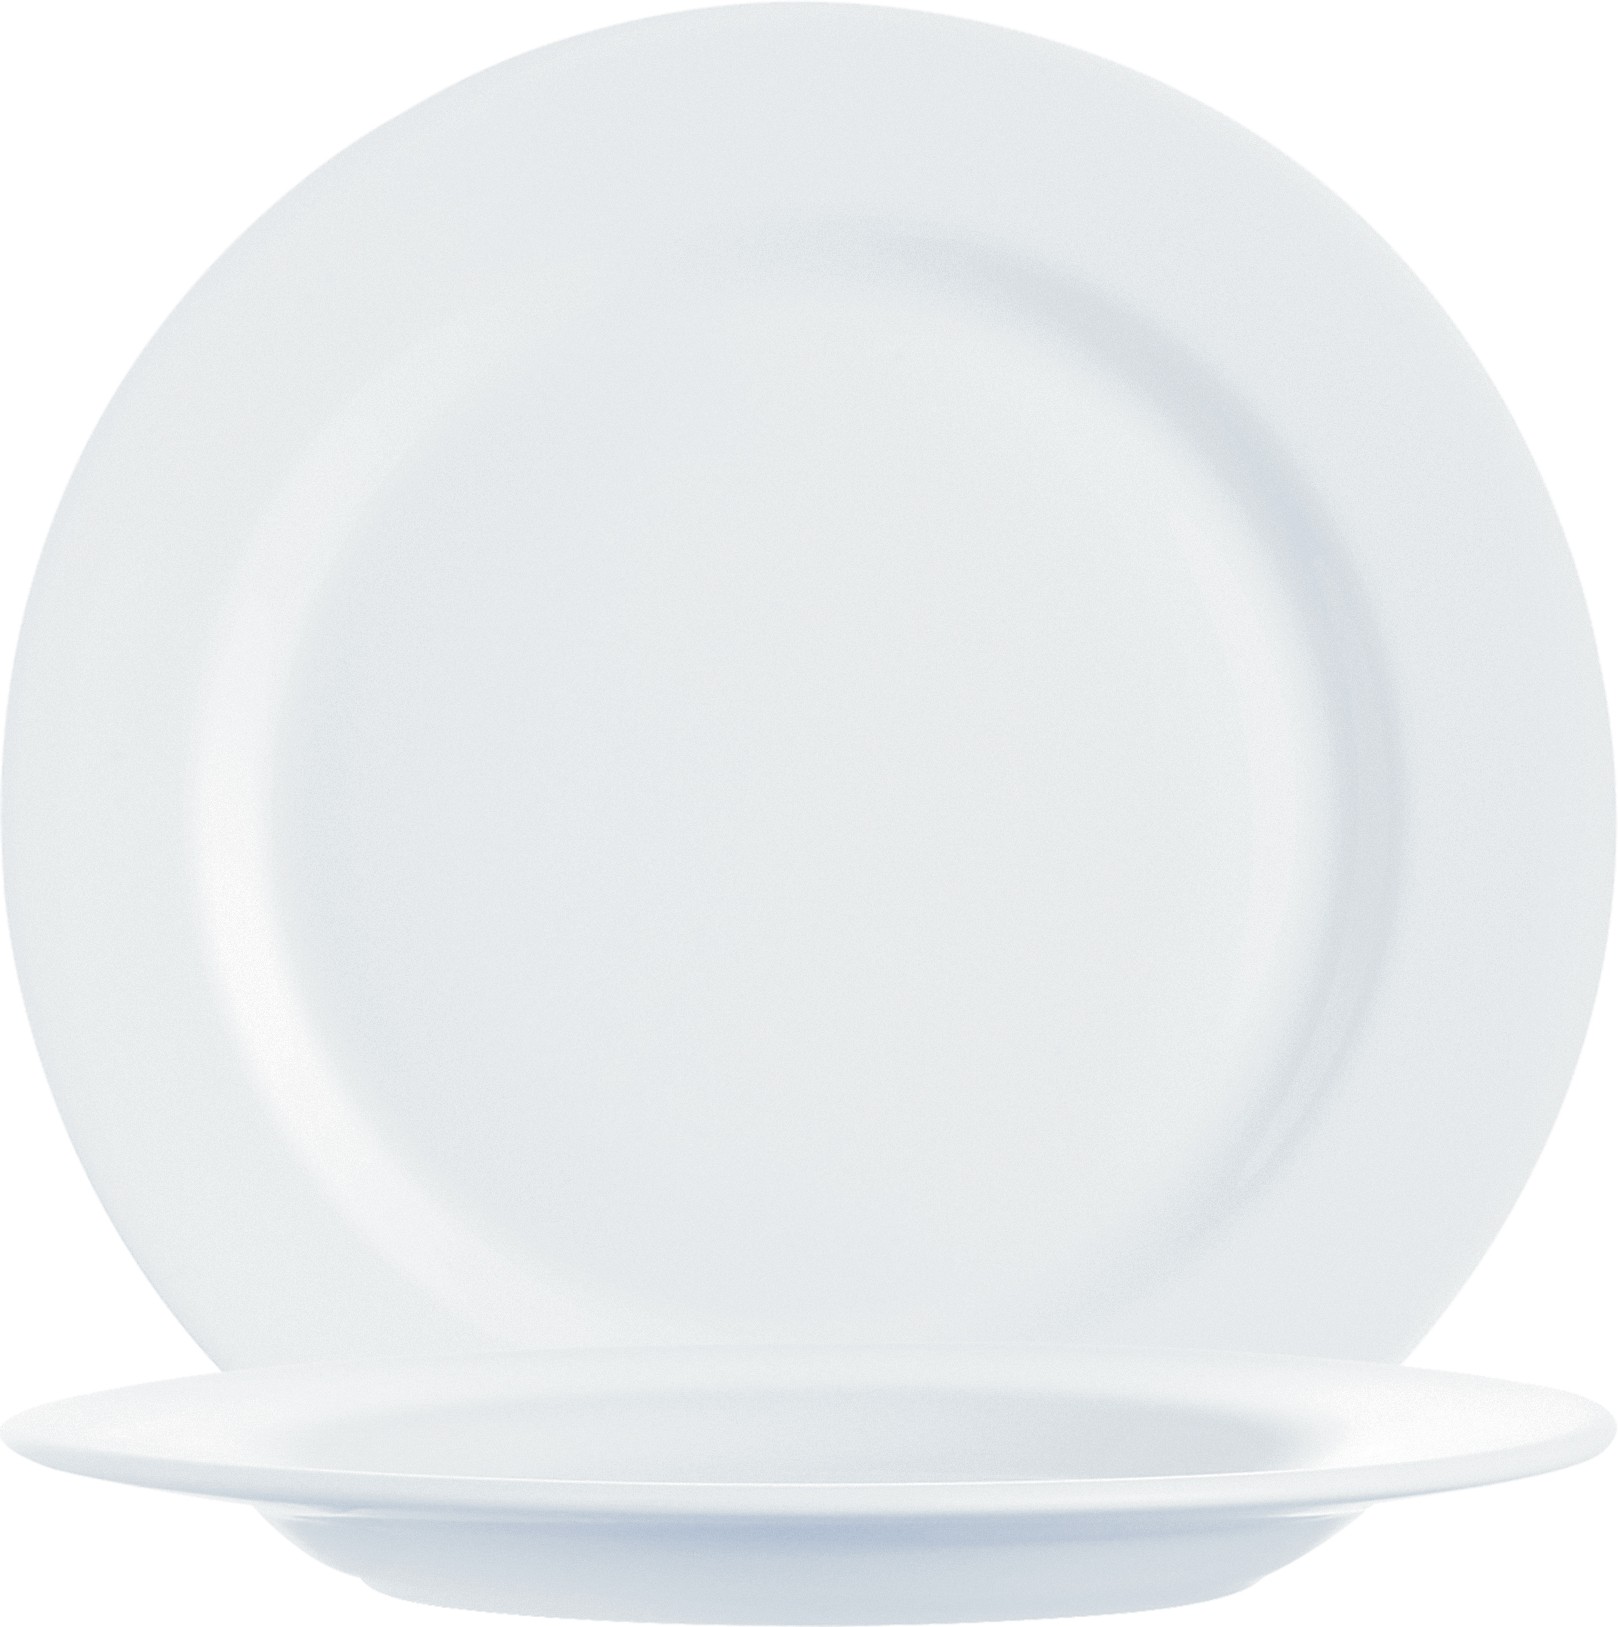 Arcoroc Intensity White Teller flach 20,5cm, in der Farbe Weiß, aus Opal, Mikrowellen- und Spülmaschinen geeignet